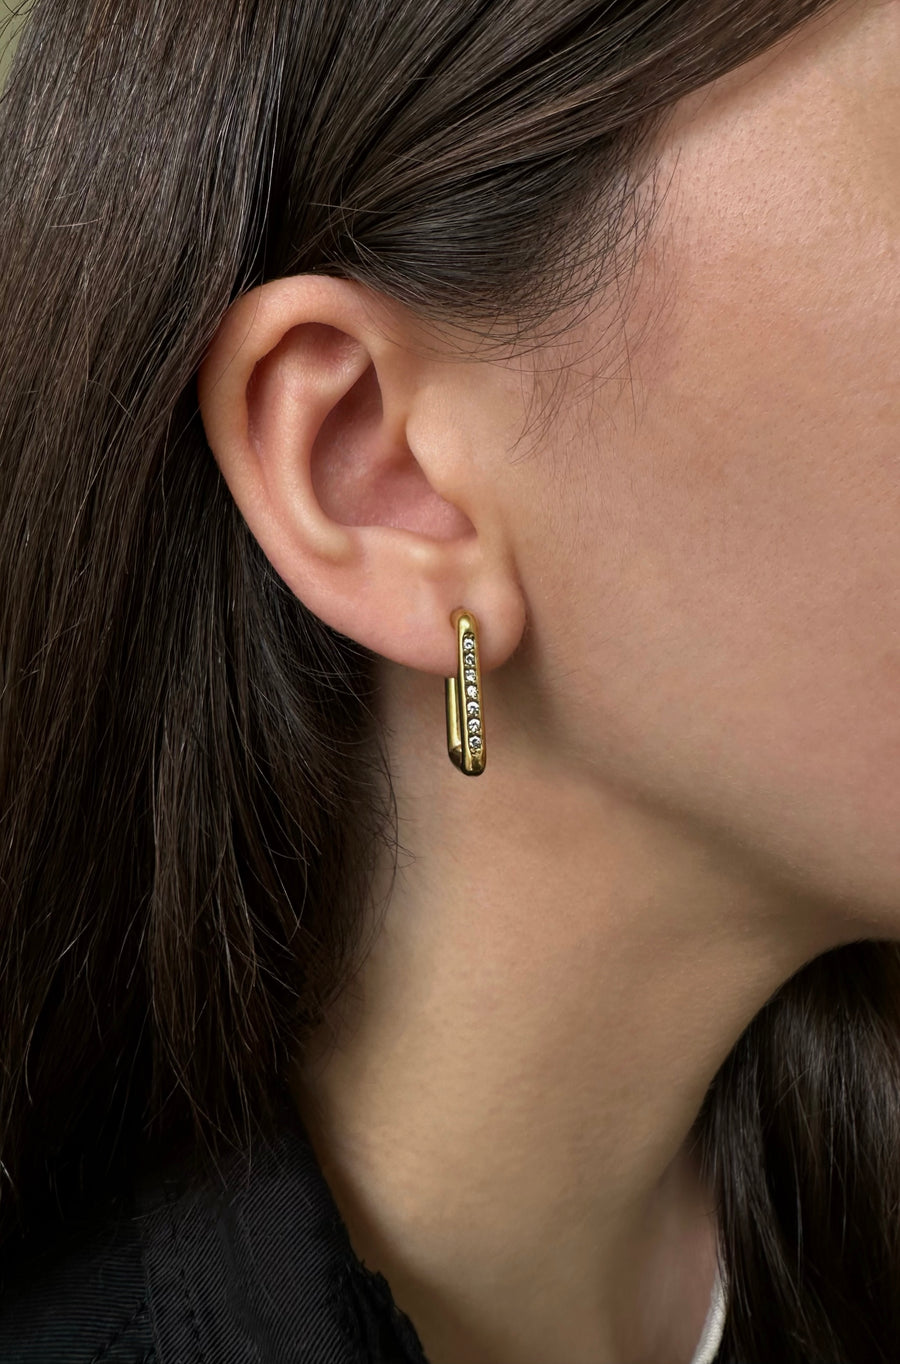 Beam earrings